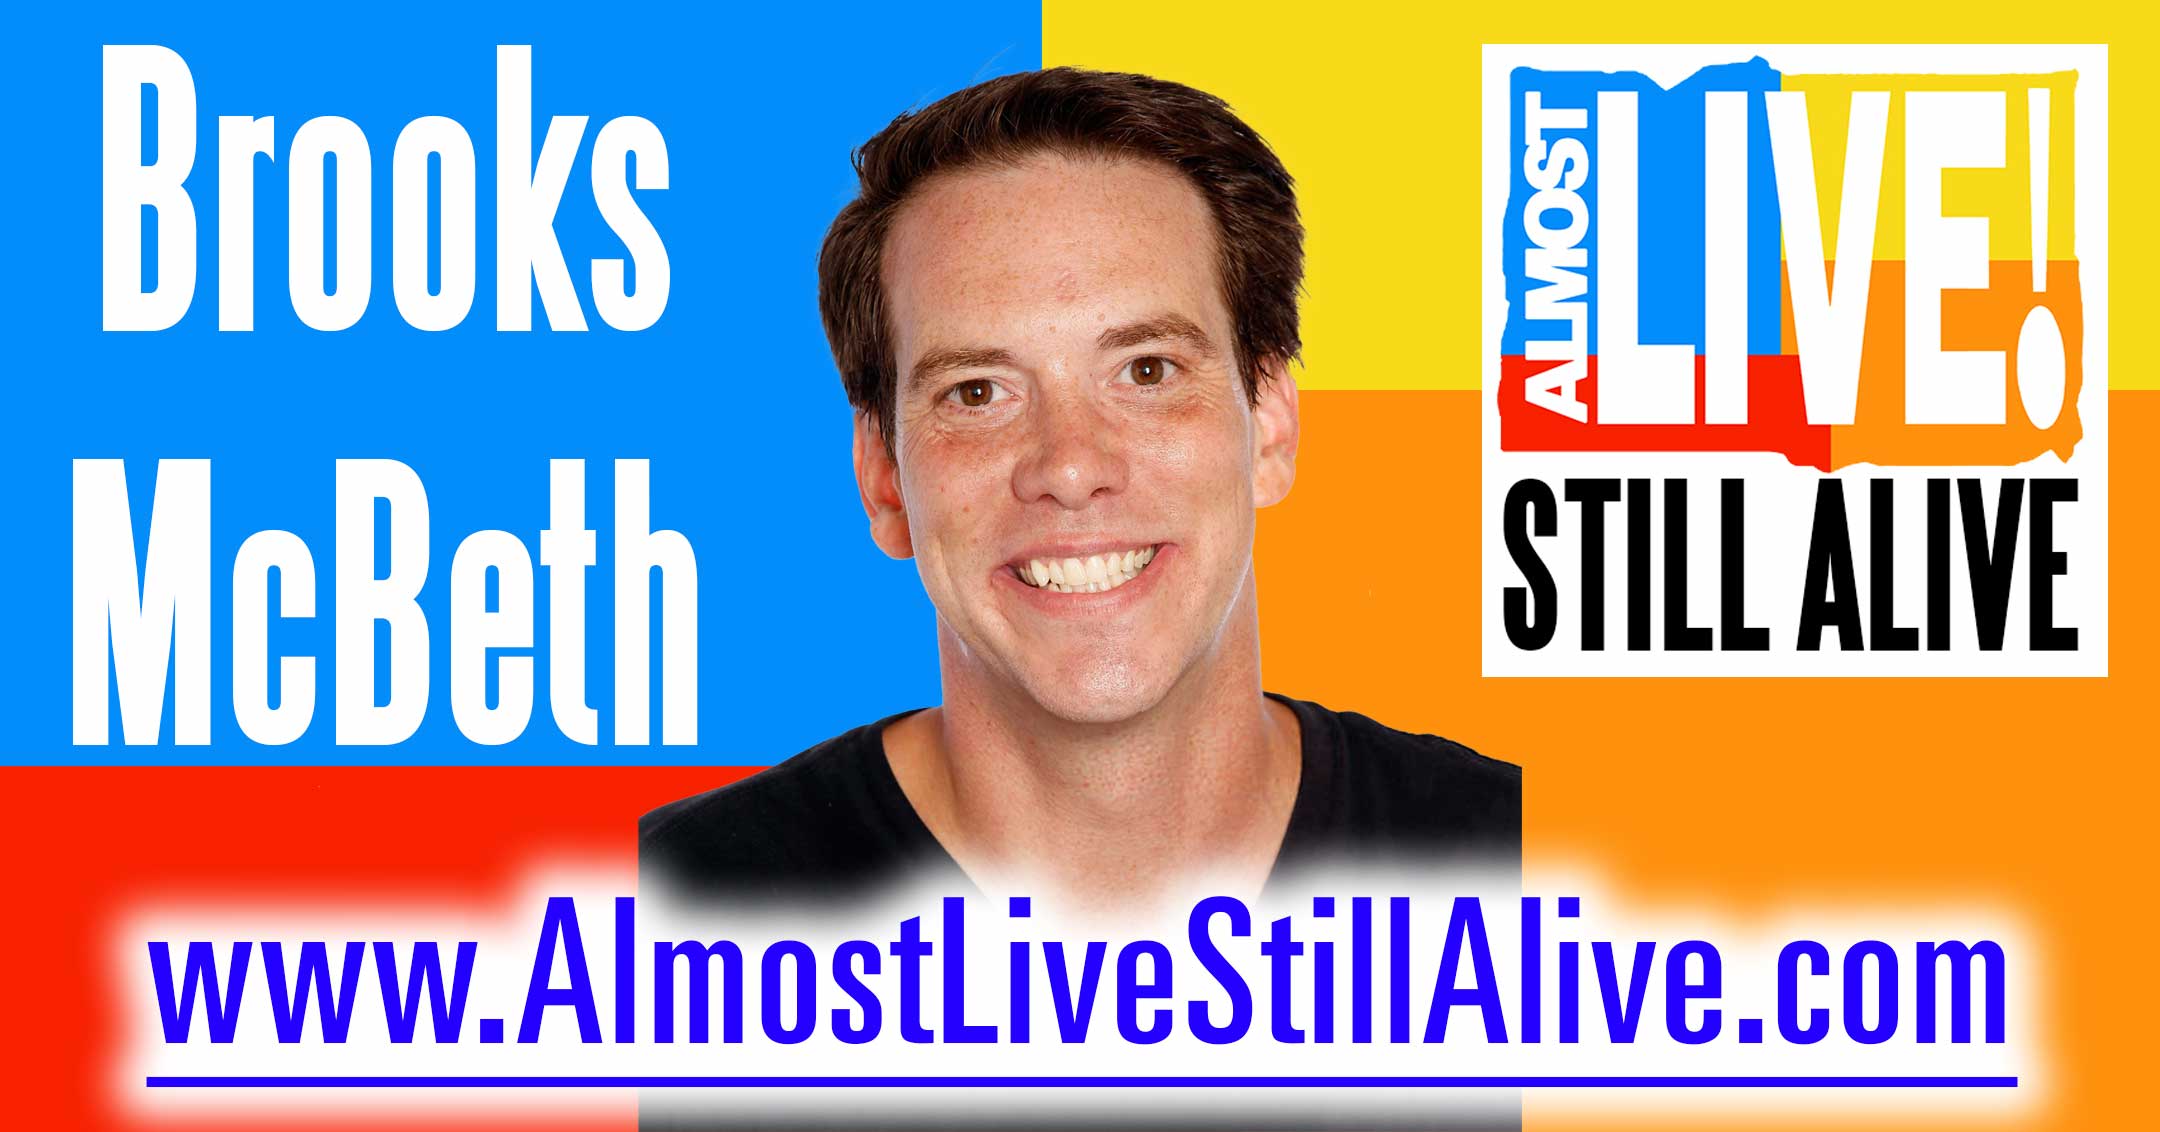 Almost Live!: Still Alive - Brooks McBeth | AlmostLiveStillAlive.com